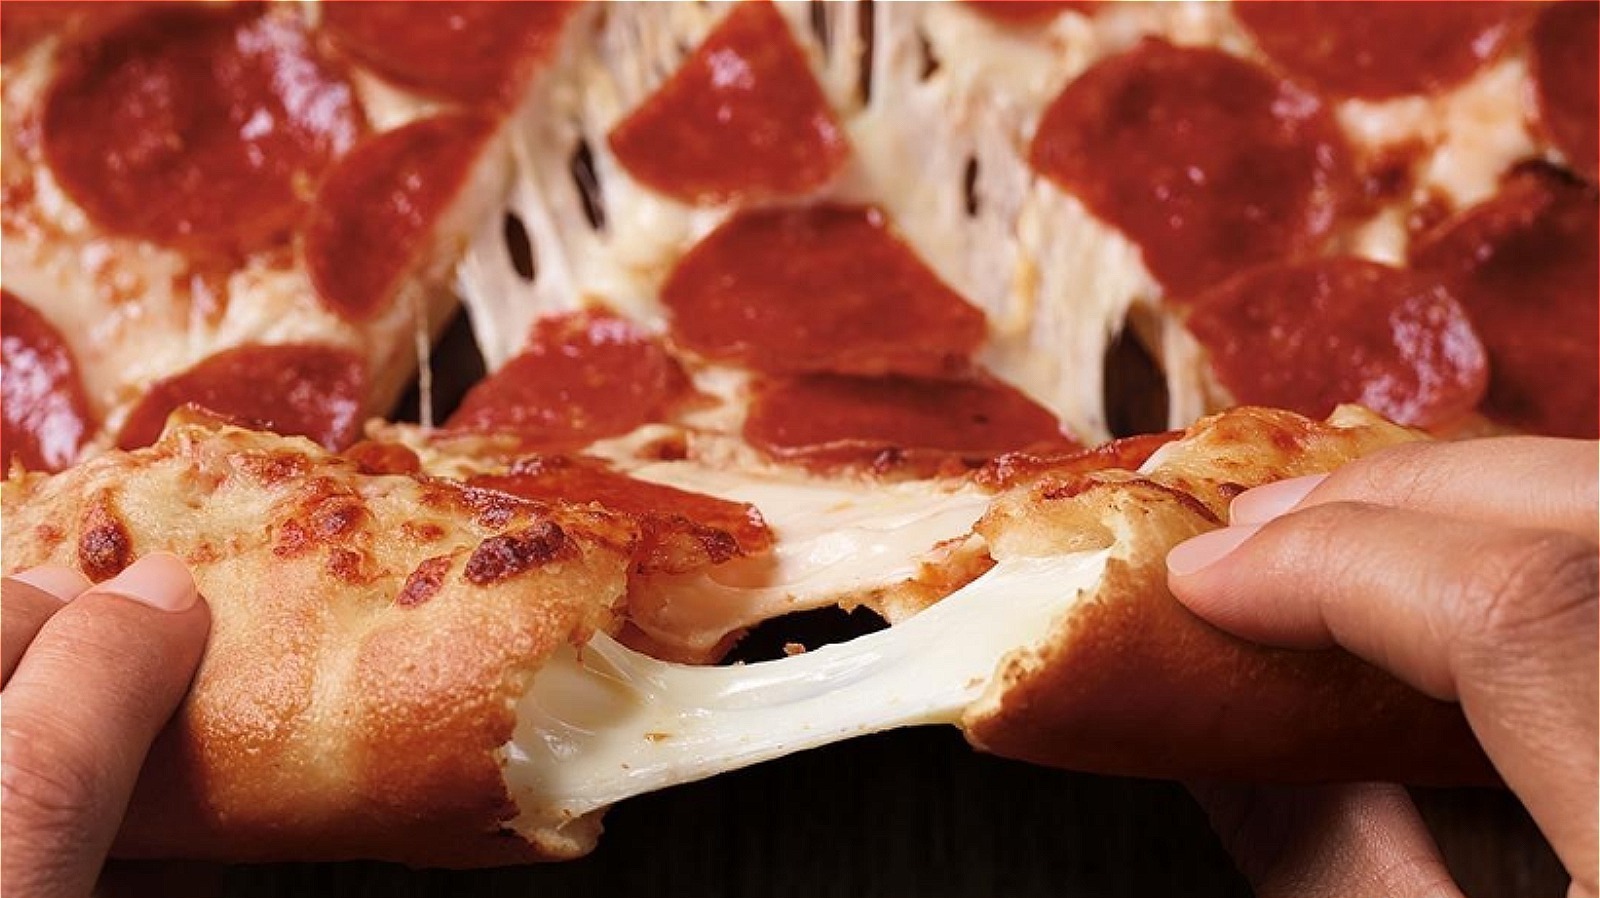 pizza hut pepperoni pizza slice